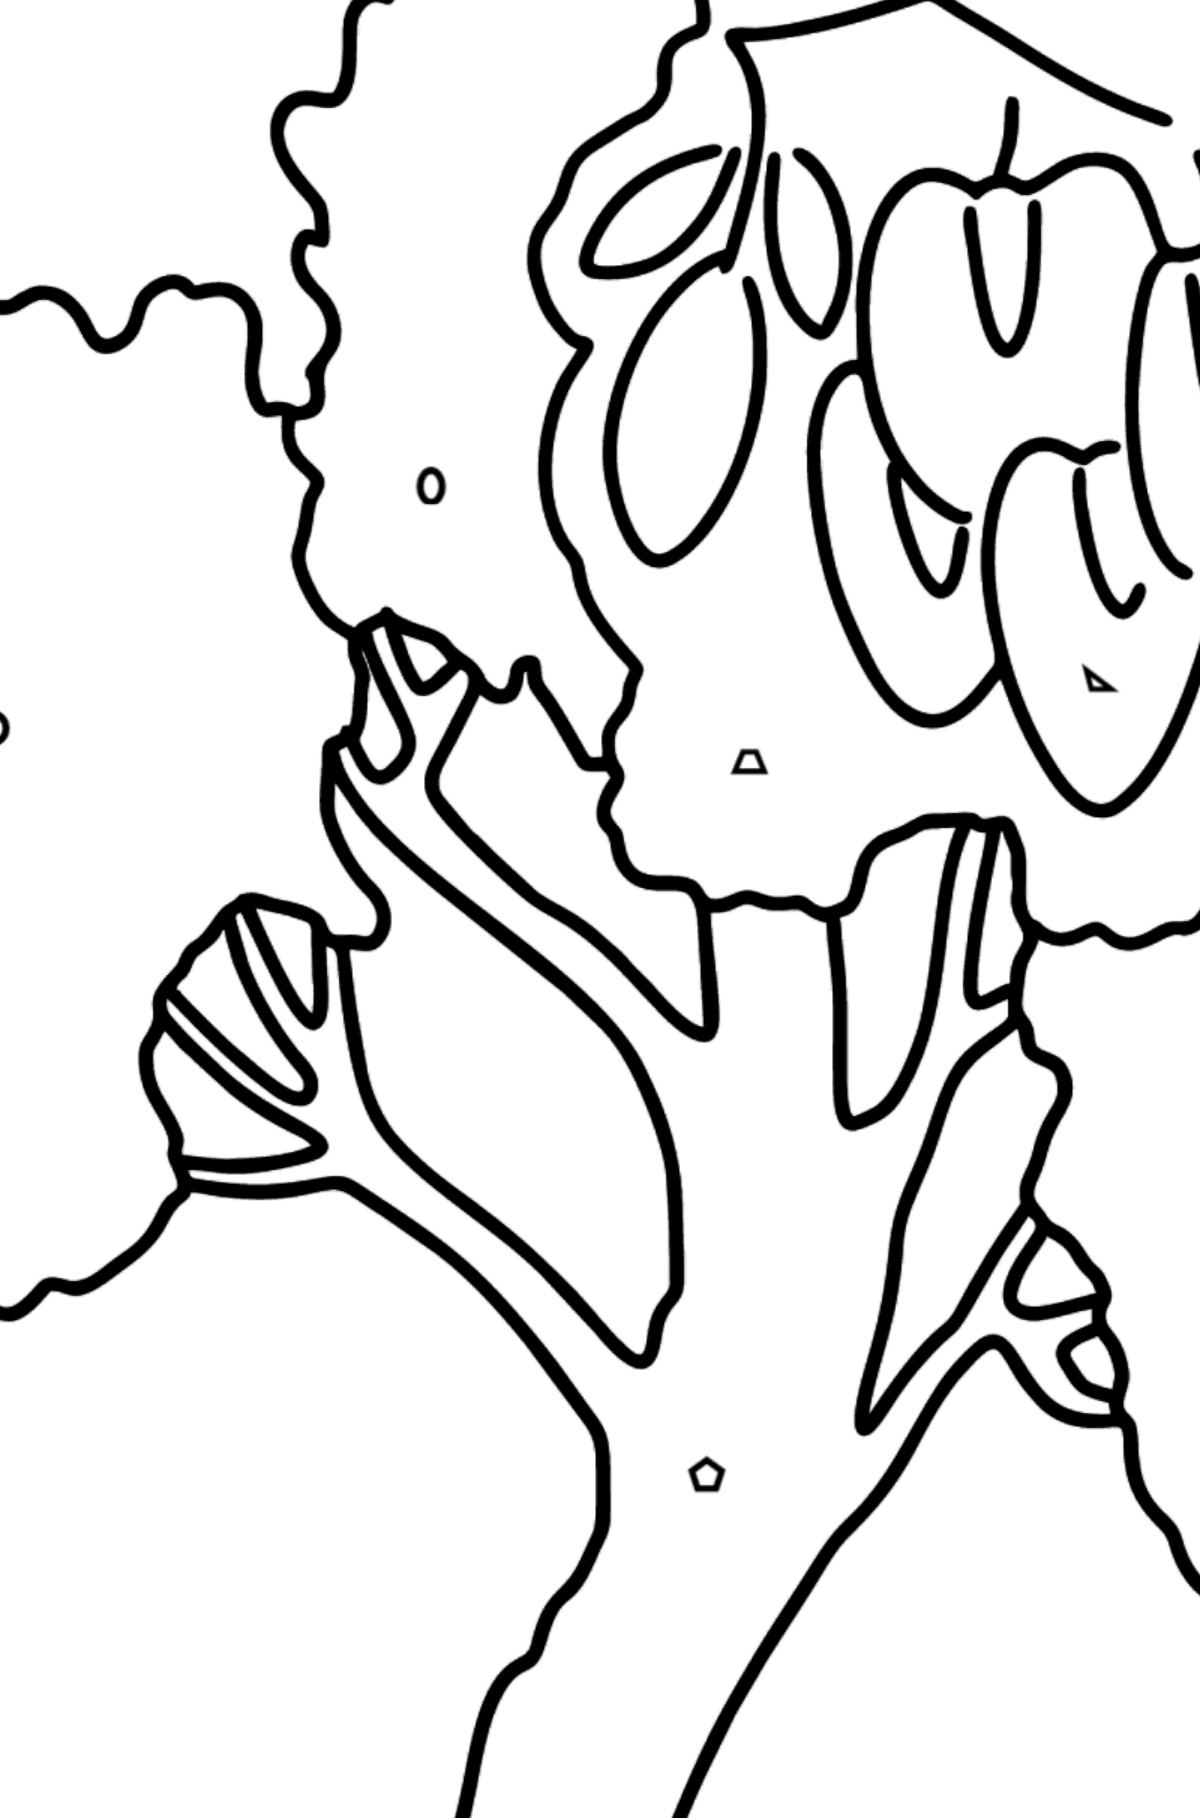 Раскраска Дерево чёрная саранча (Робиния псевдоакация) - Картинка высокого качества для Детей